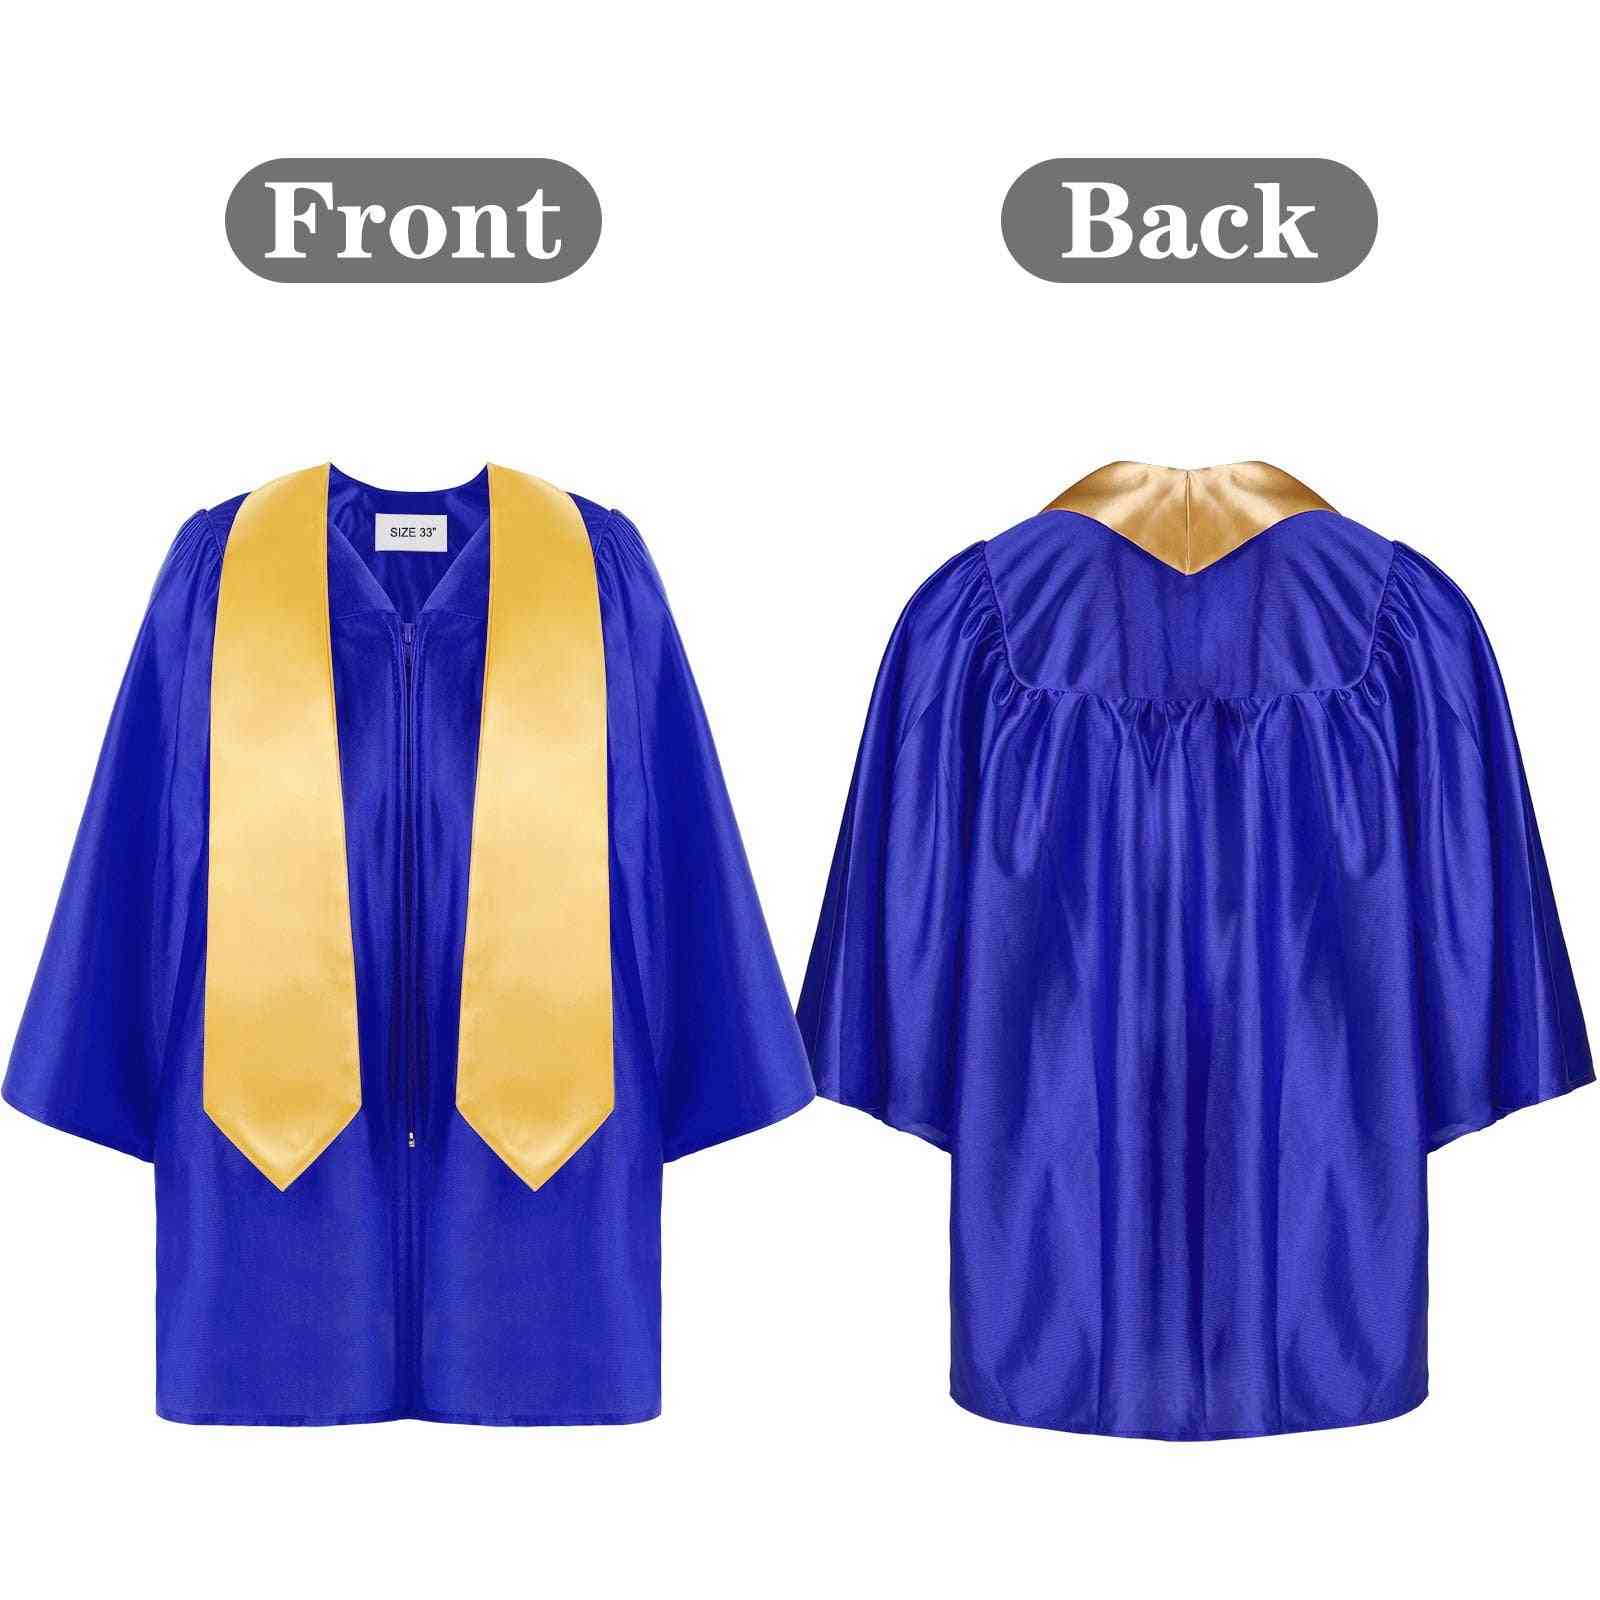 Children's Academic Dress School Uniforms For